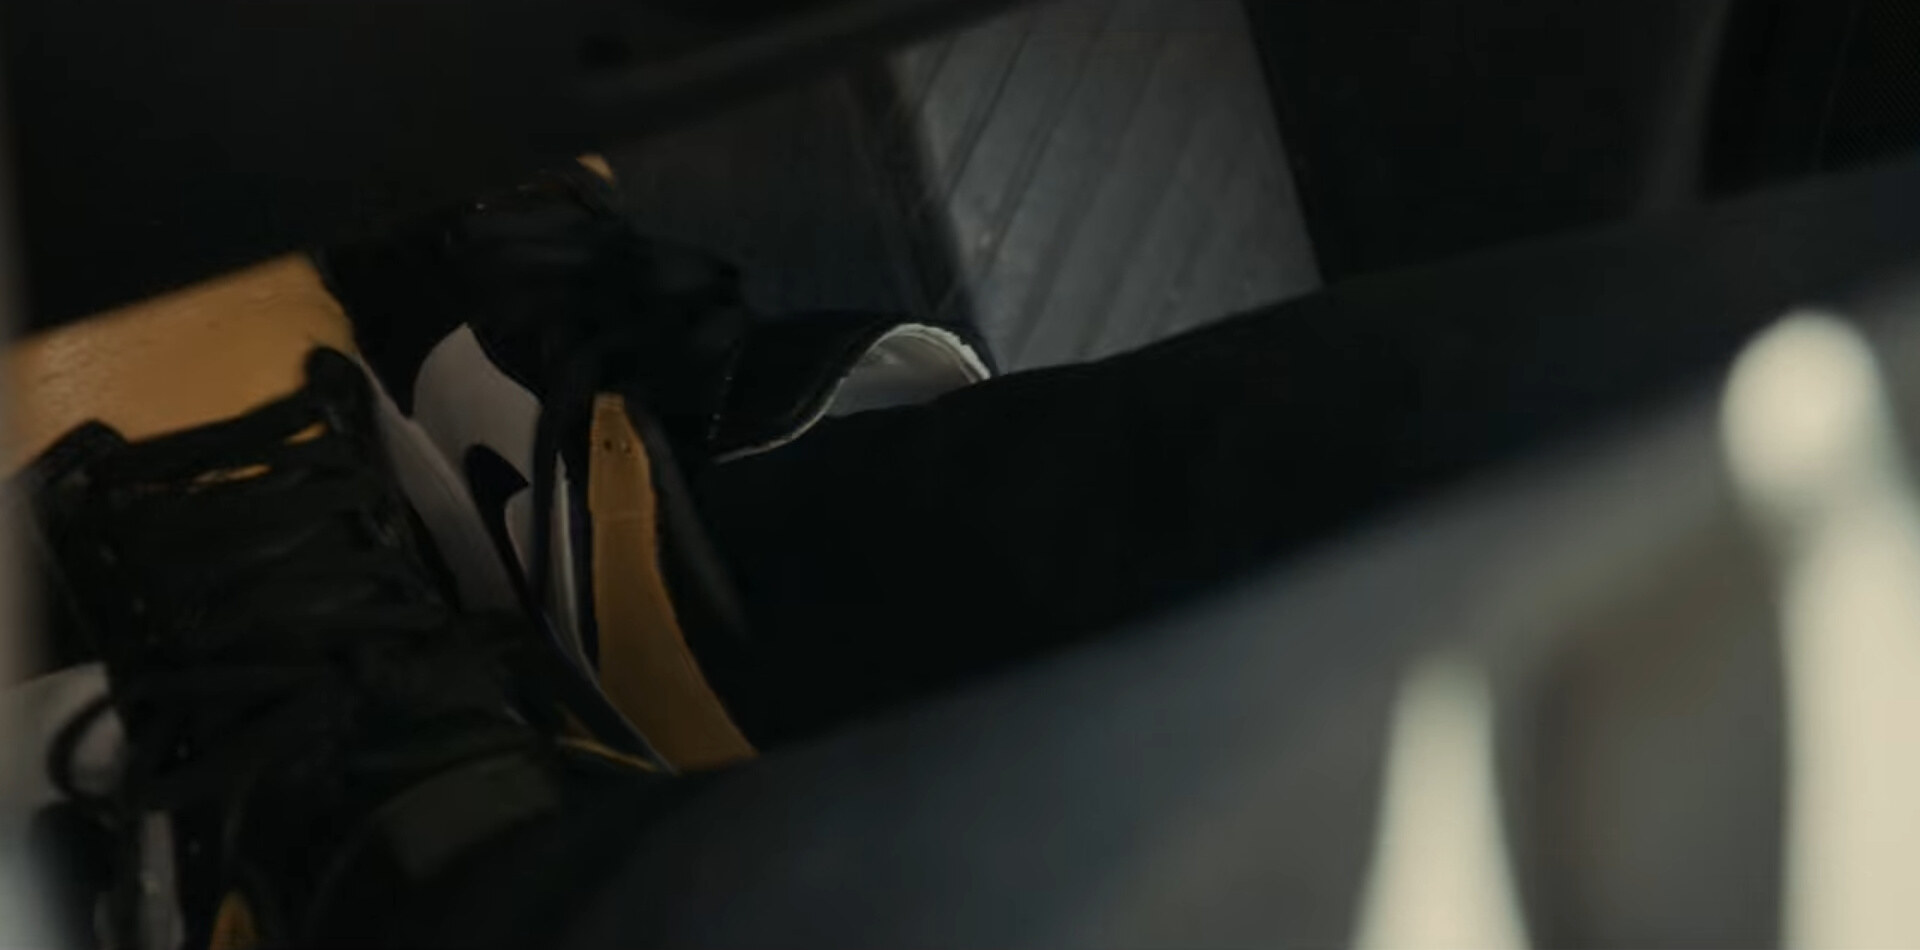 Lupin Netflix Parte 2 Air Jordan 1 Mid Yellow Toe